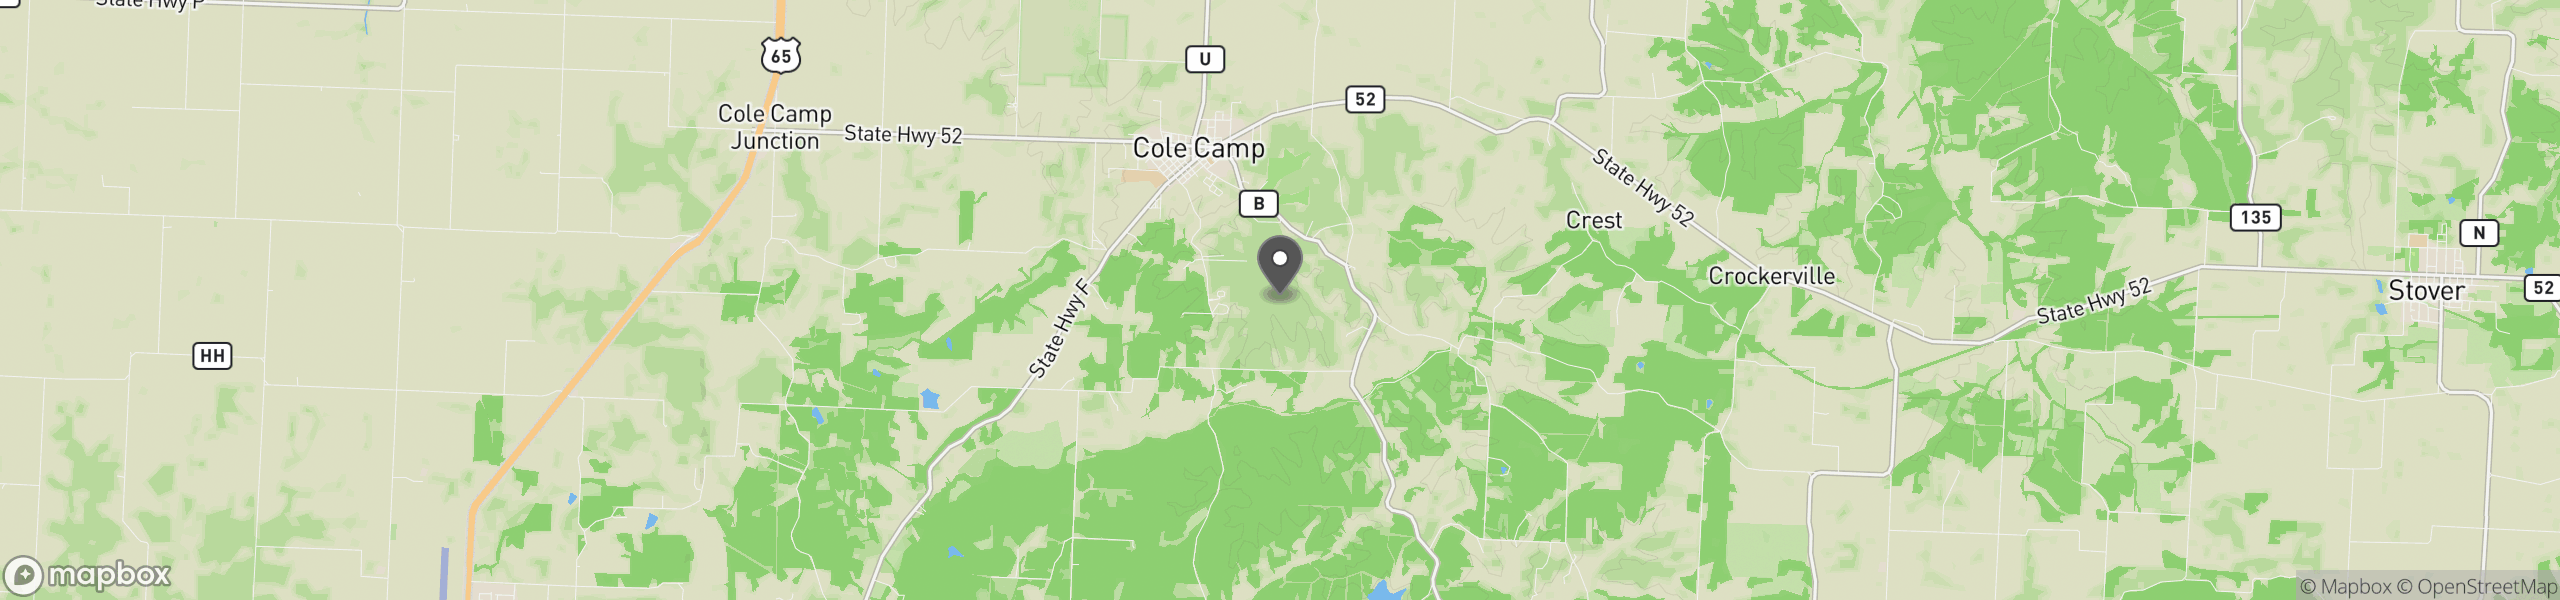 Cole Camp, MO